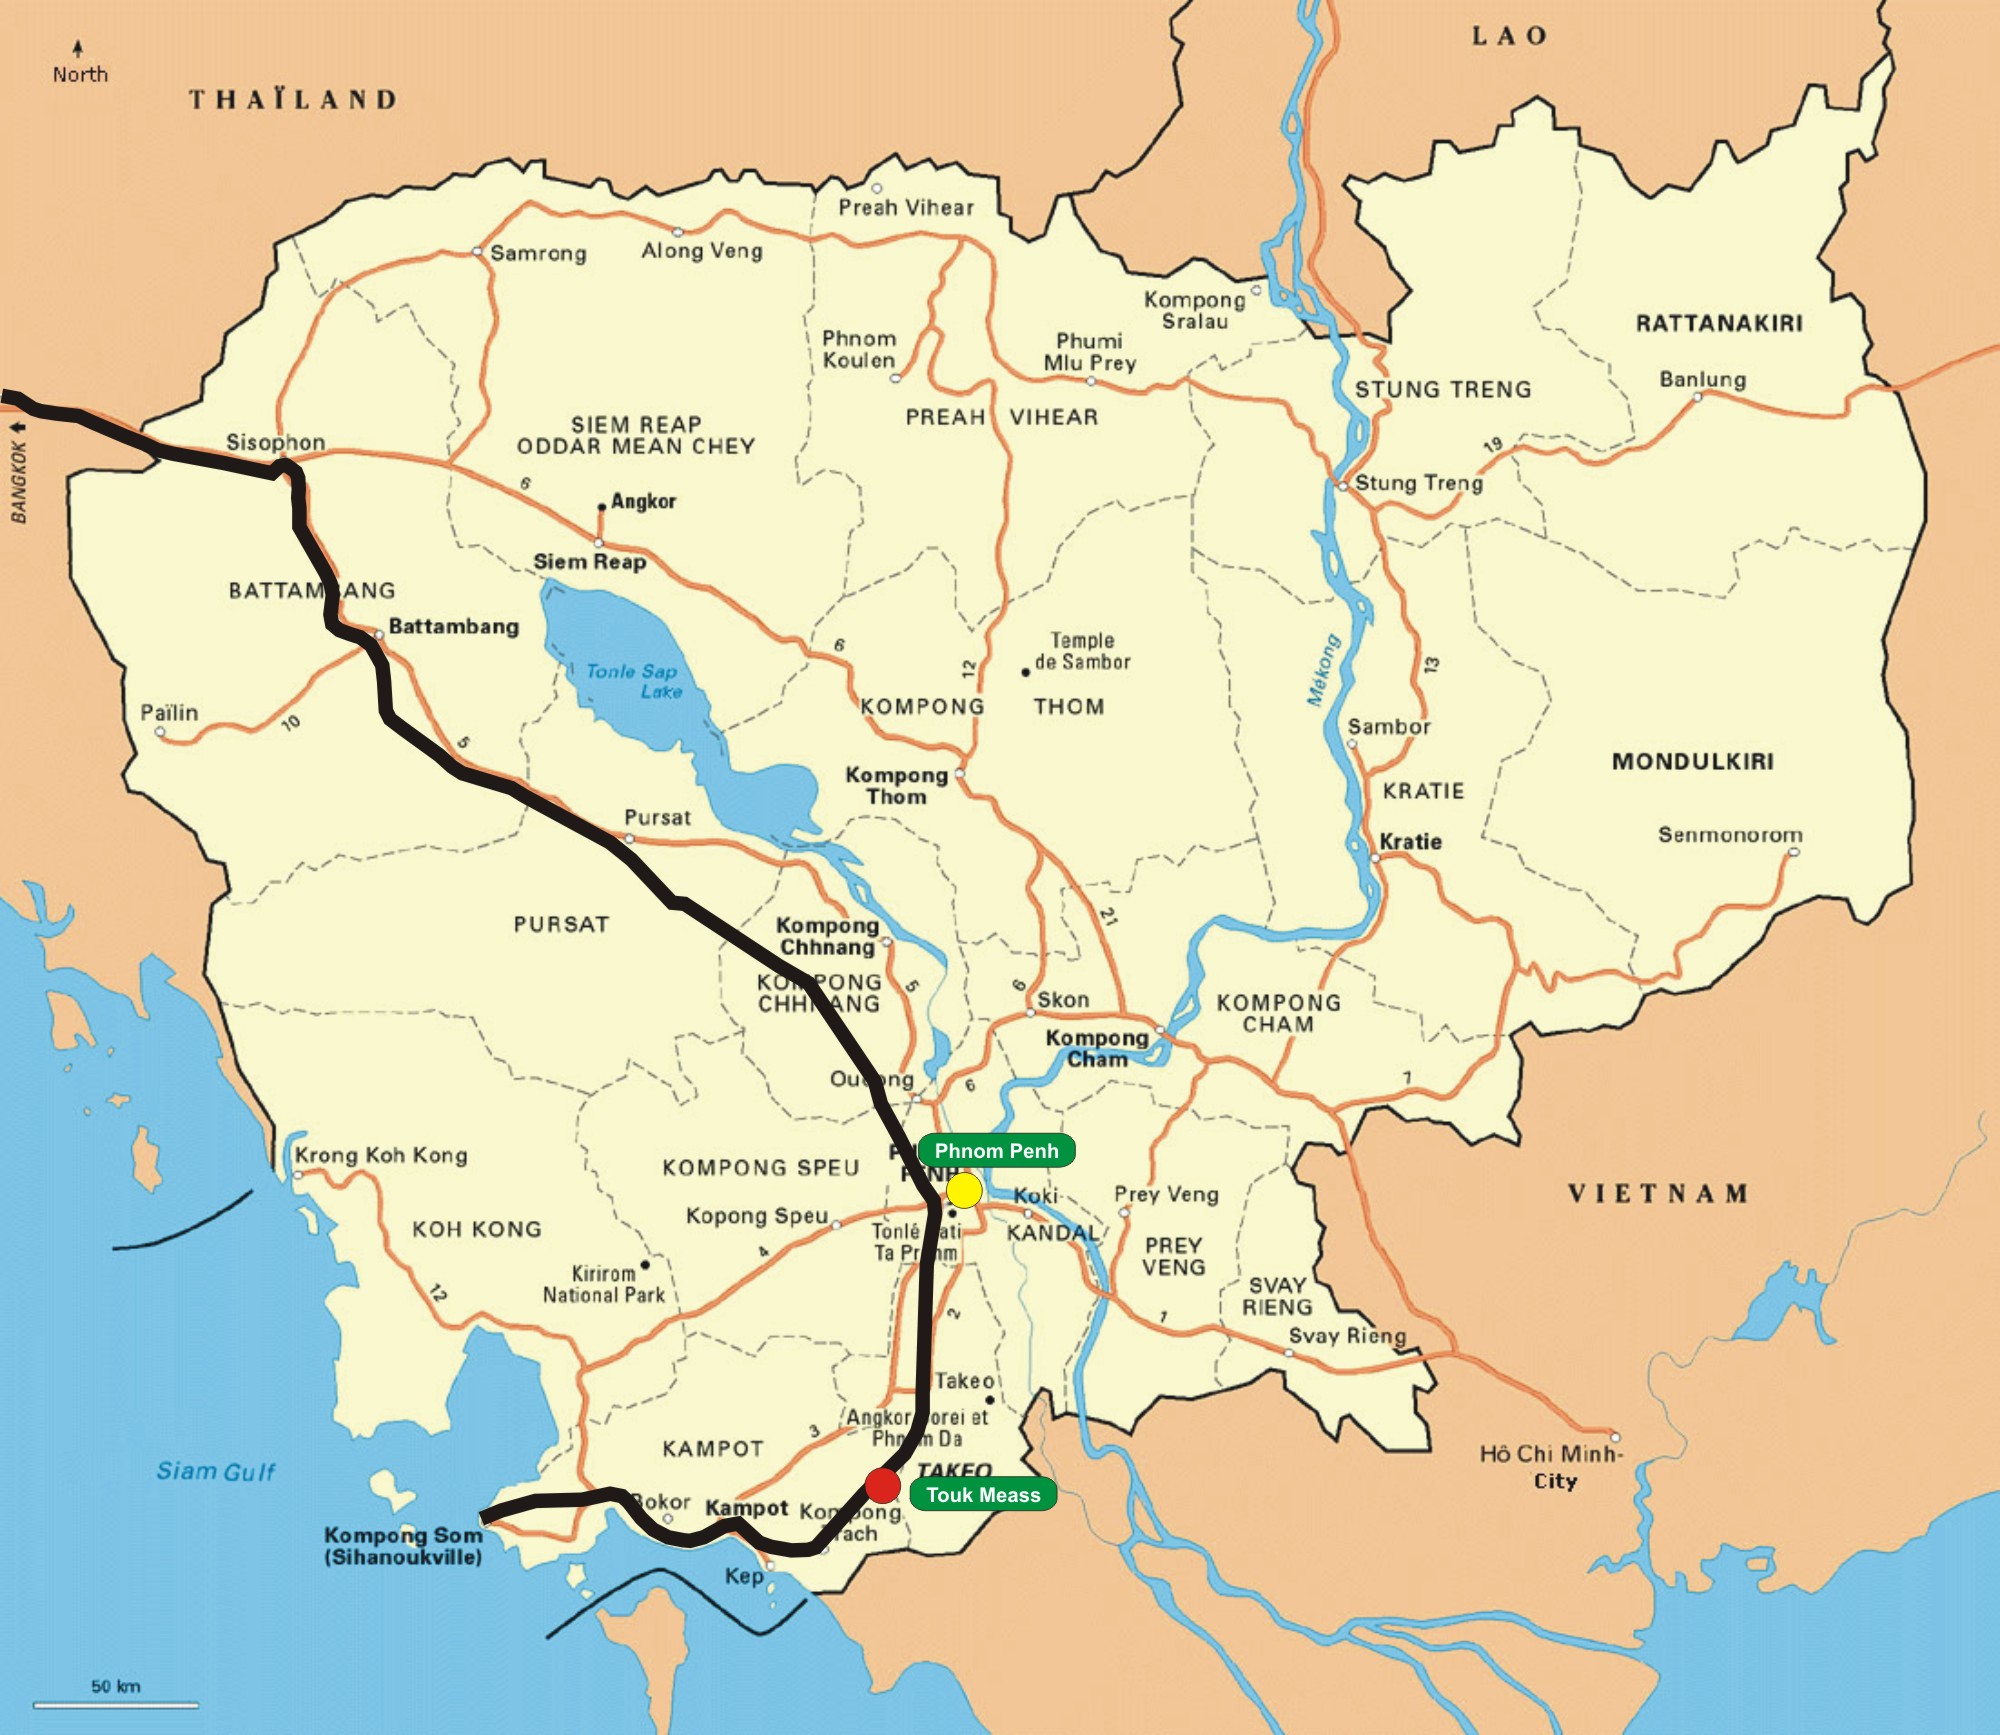 Mapa de Camboya y su red ferroviaria, resaltando el tramo que fue puesto en servicio entre la capital y Toyk Meas. Vía Libre.